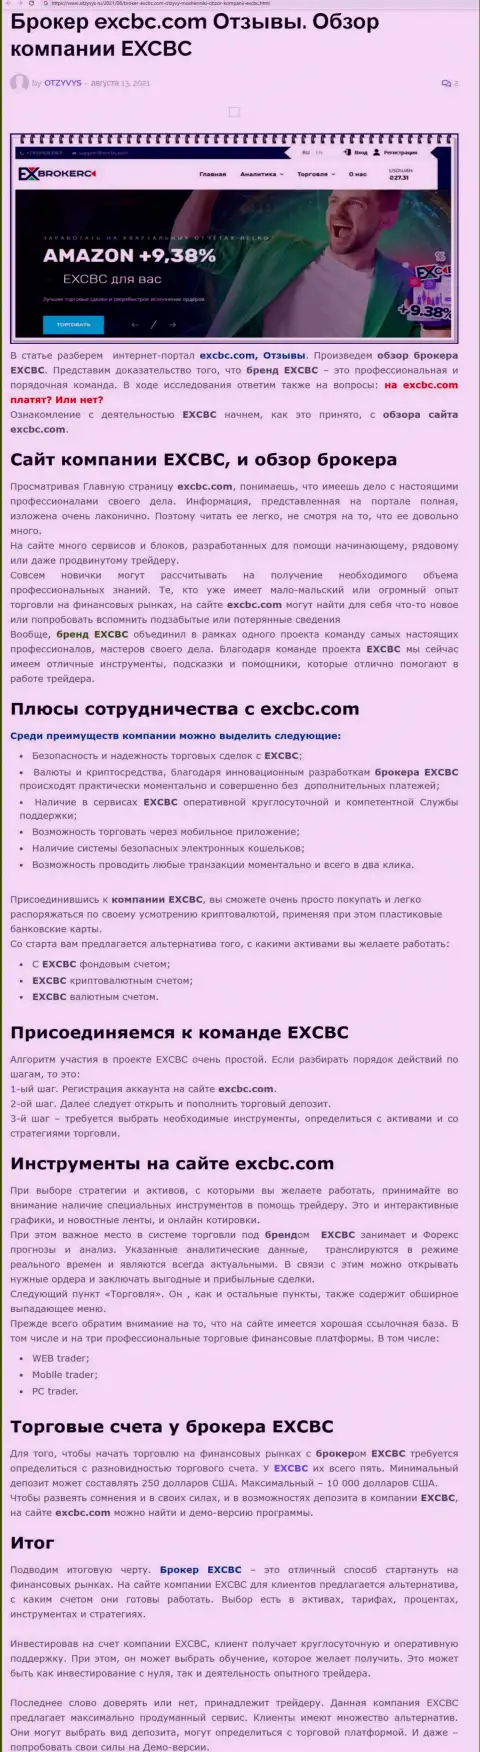 Обзорный материал о ФОРЕКС организации ЕХ Брокерс на онлайн-сервисе Otzyvys Ru